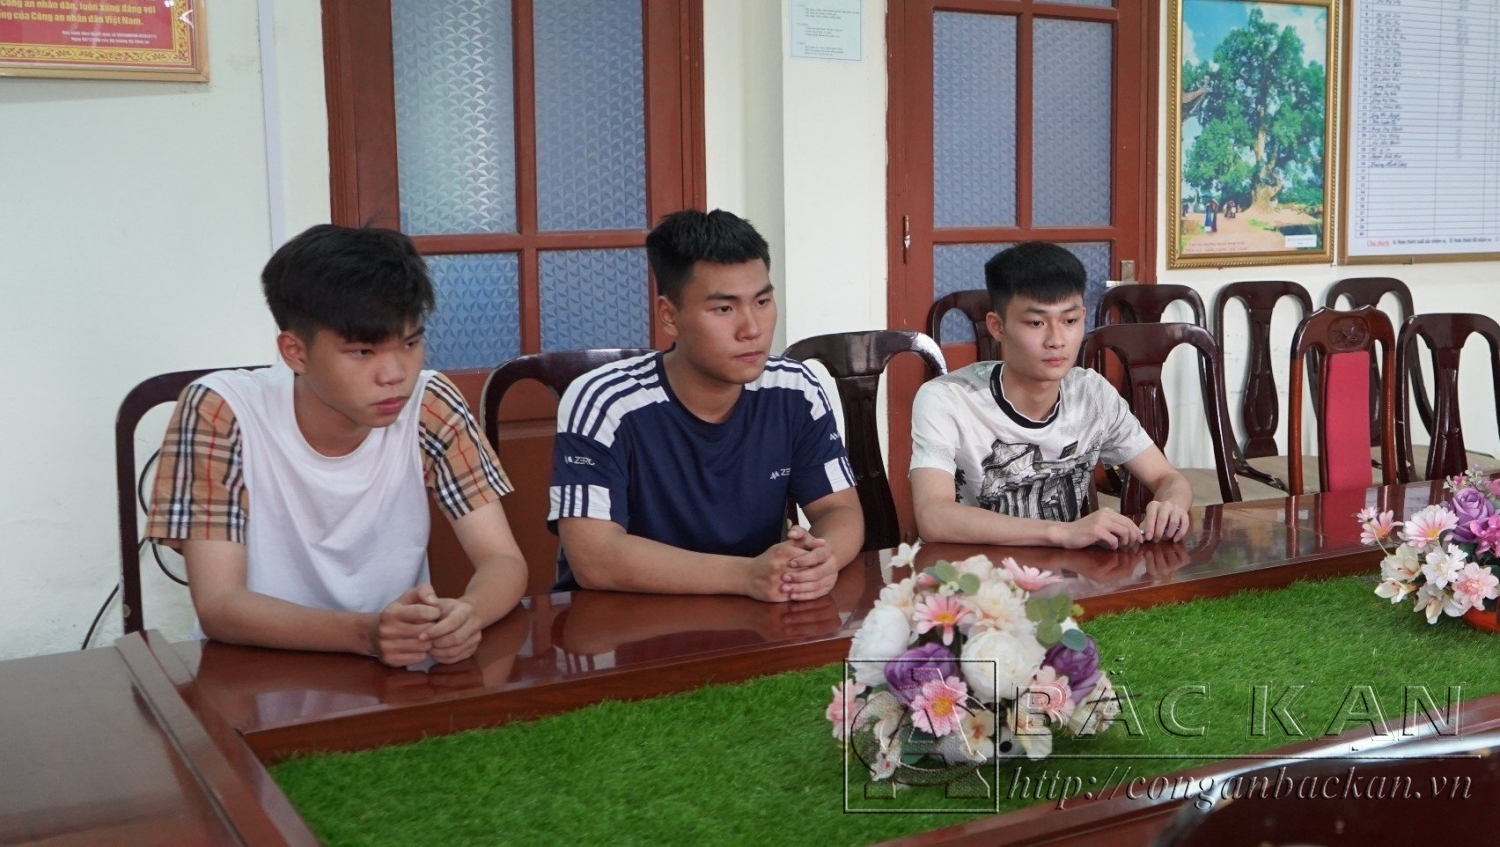 Đinh Như Trung, Nguyễn Hoàng Bình, Nguyễn Tùng Dương (từ trái qua phải)